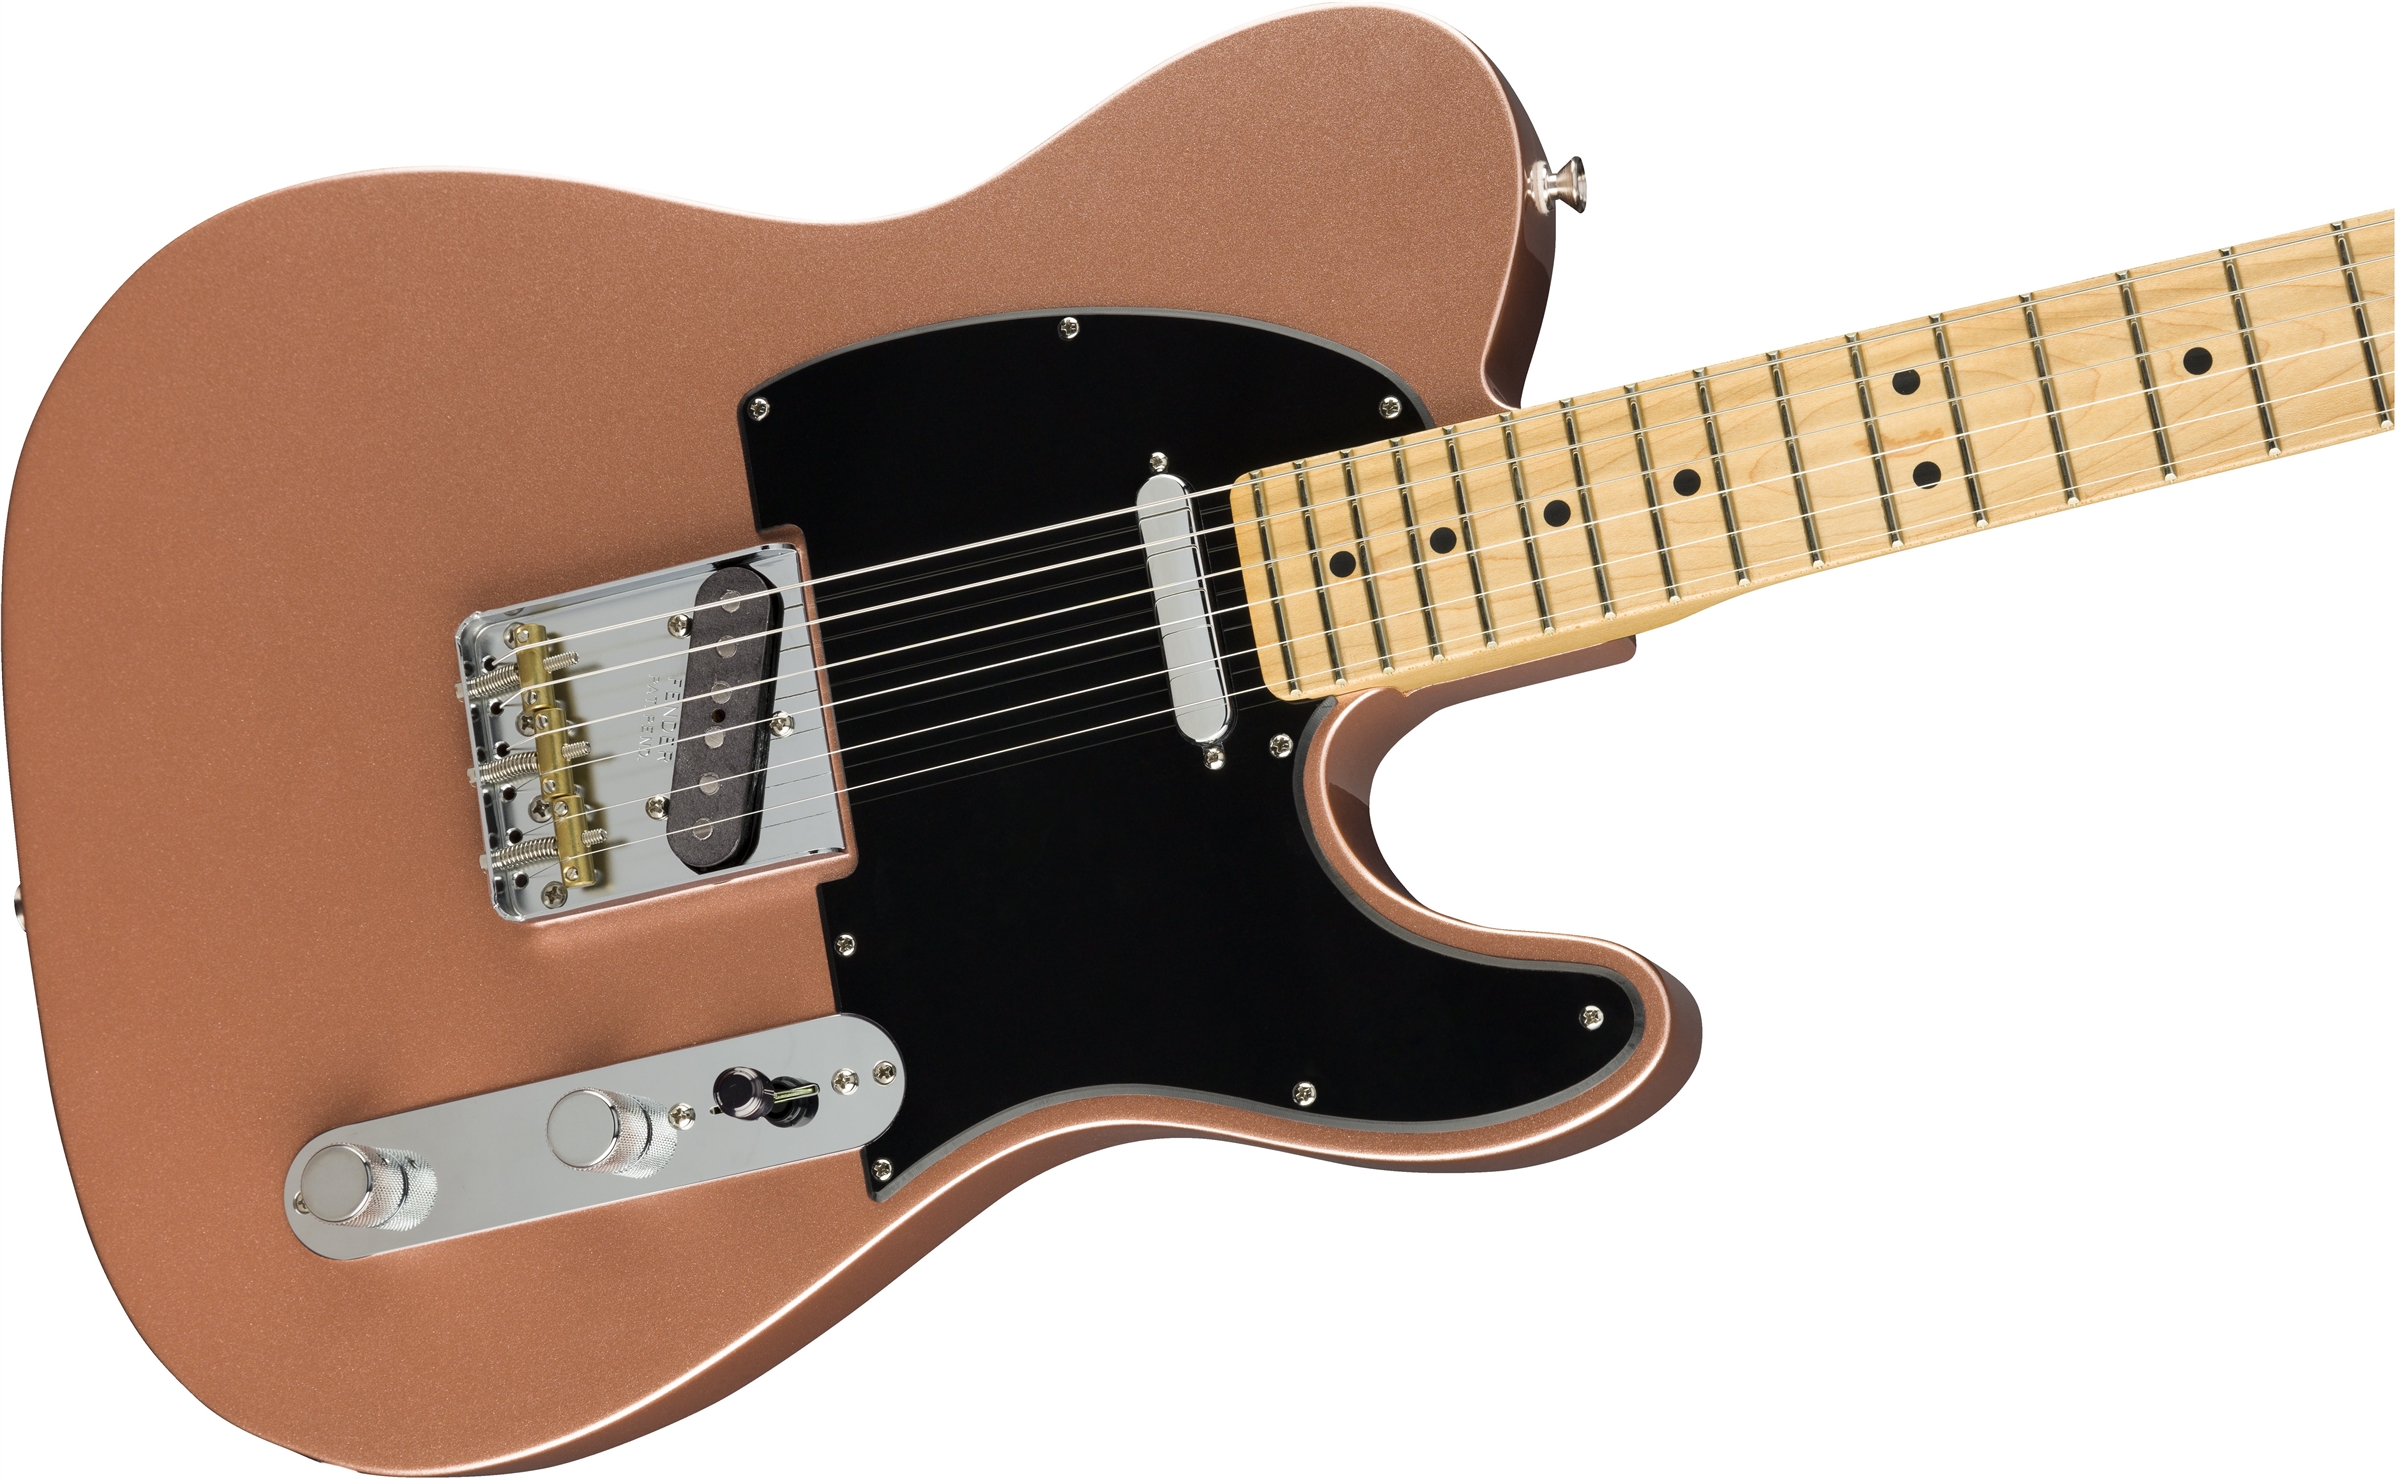 Fender Tele American Performer Usa Mn - Penny - Guitarra eléctrica con forma de tel - Variation 3